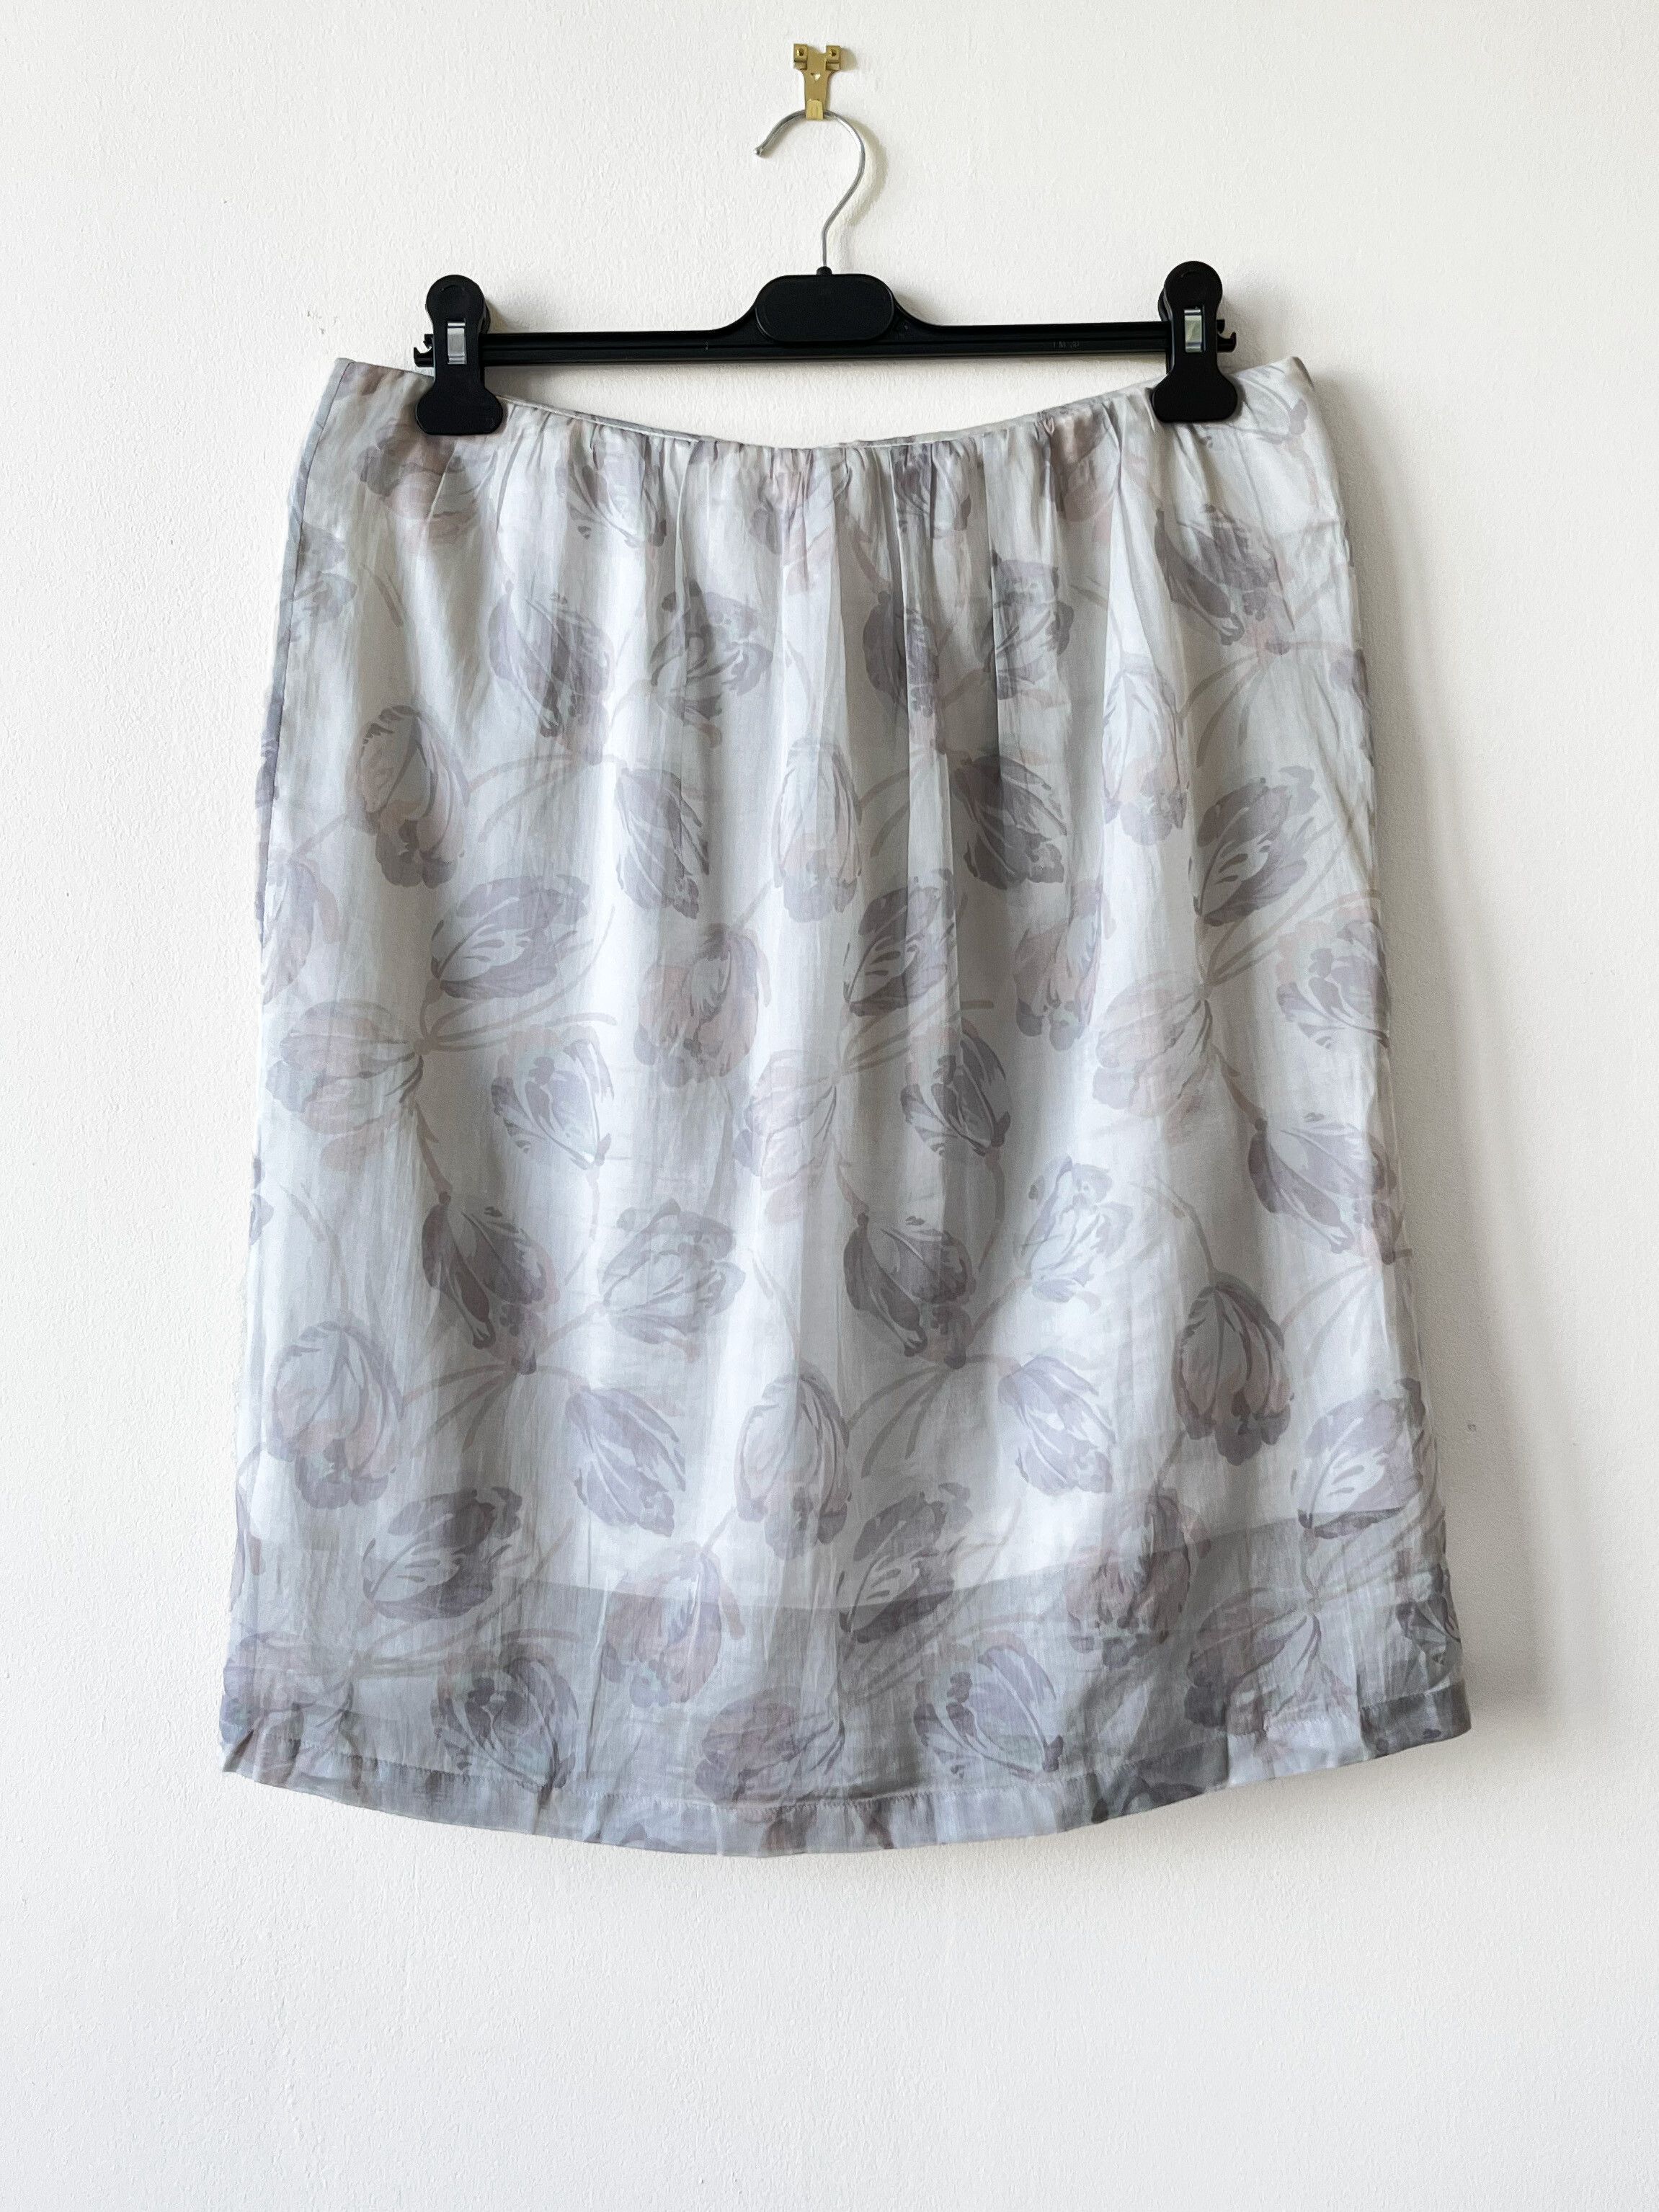 Dries Van Noten Dries van noten grey floral print silk skirt Size 30" / US 8 / IT 44 - 1 Preview